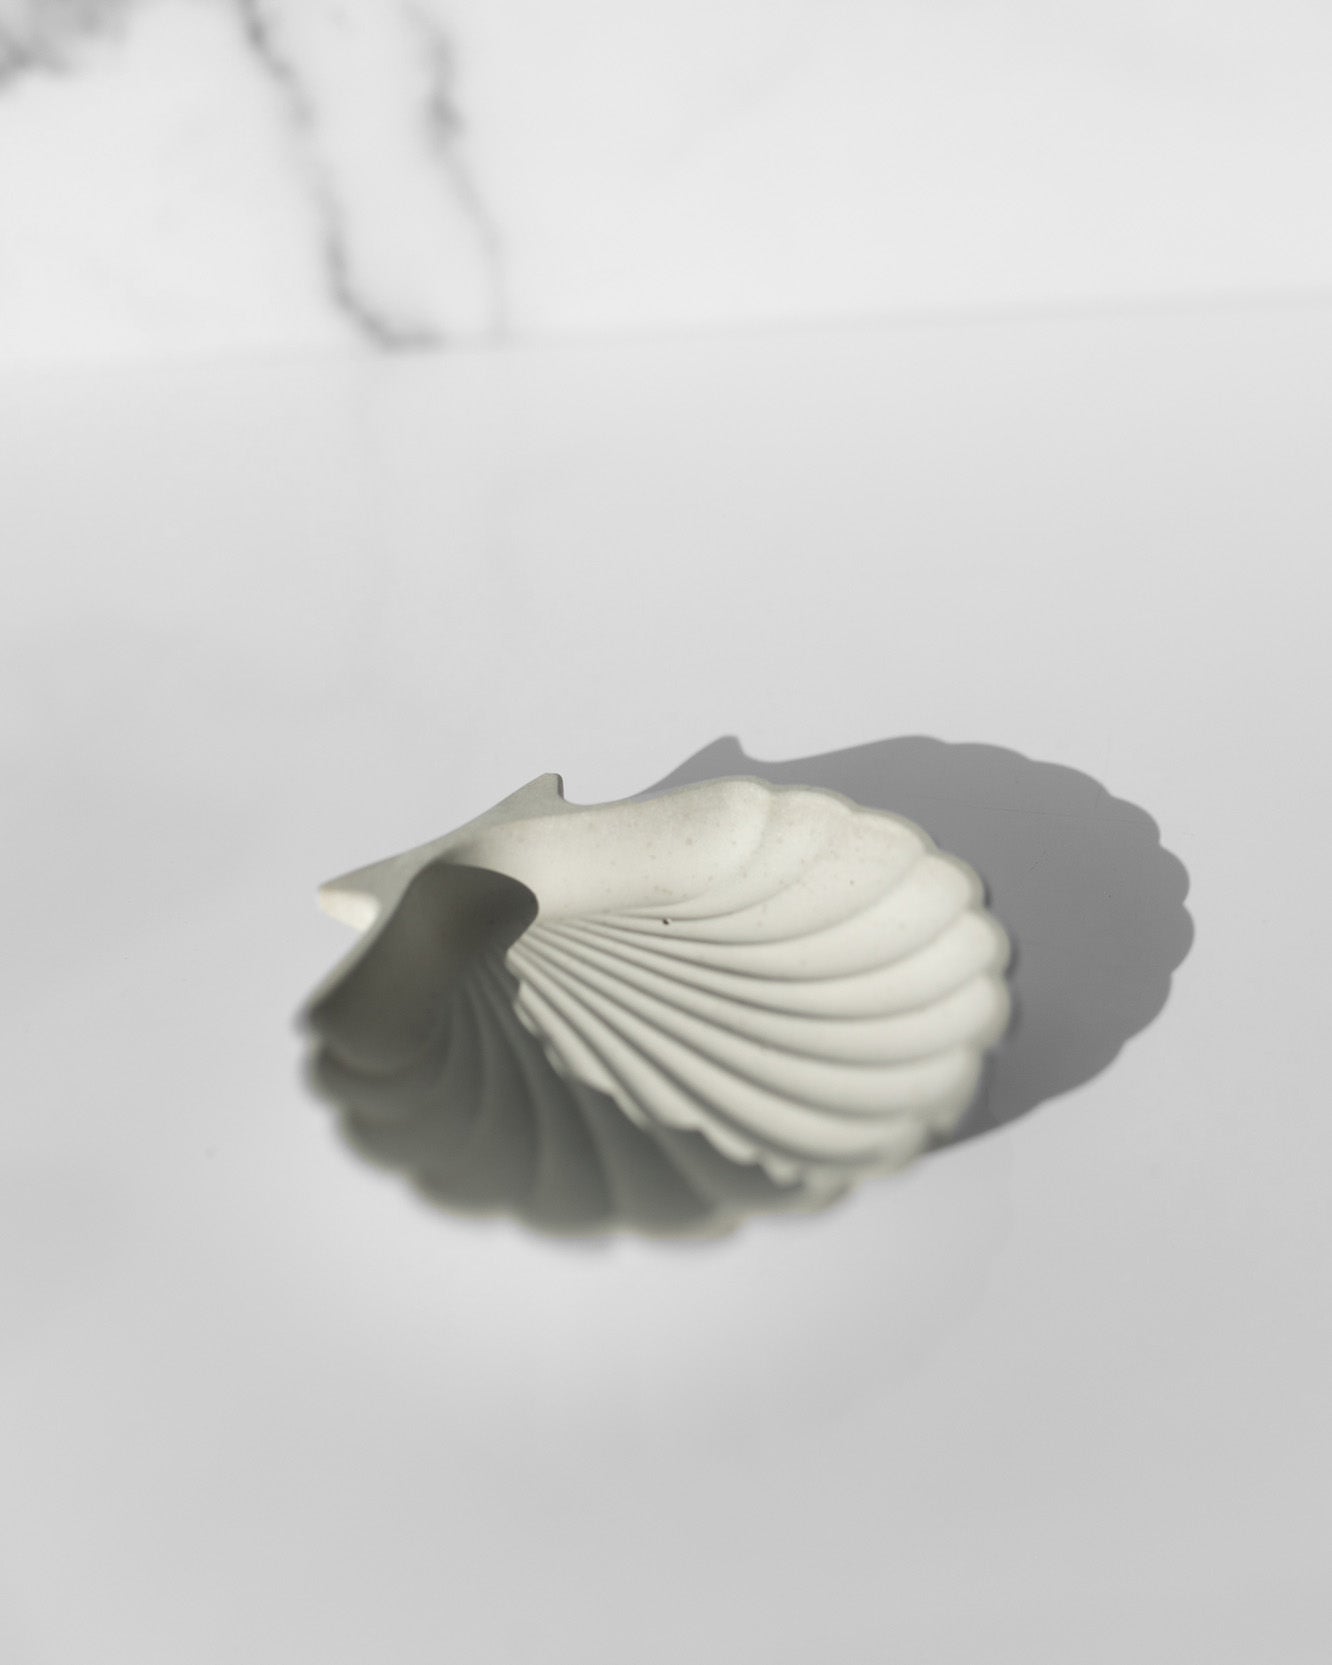 Concrete Seashell Tray